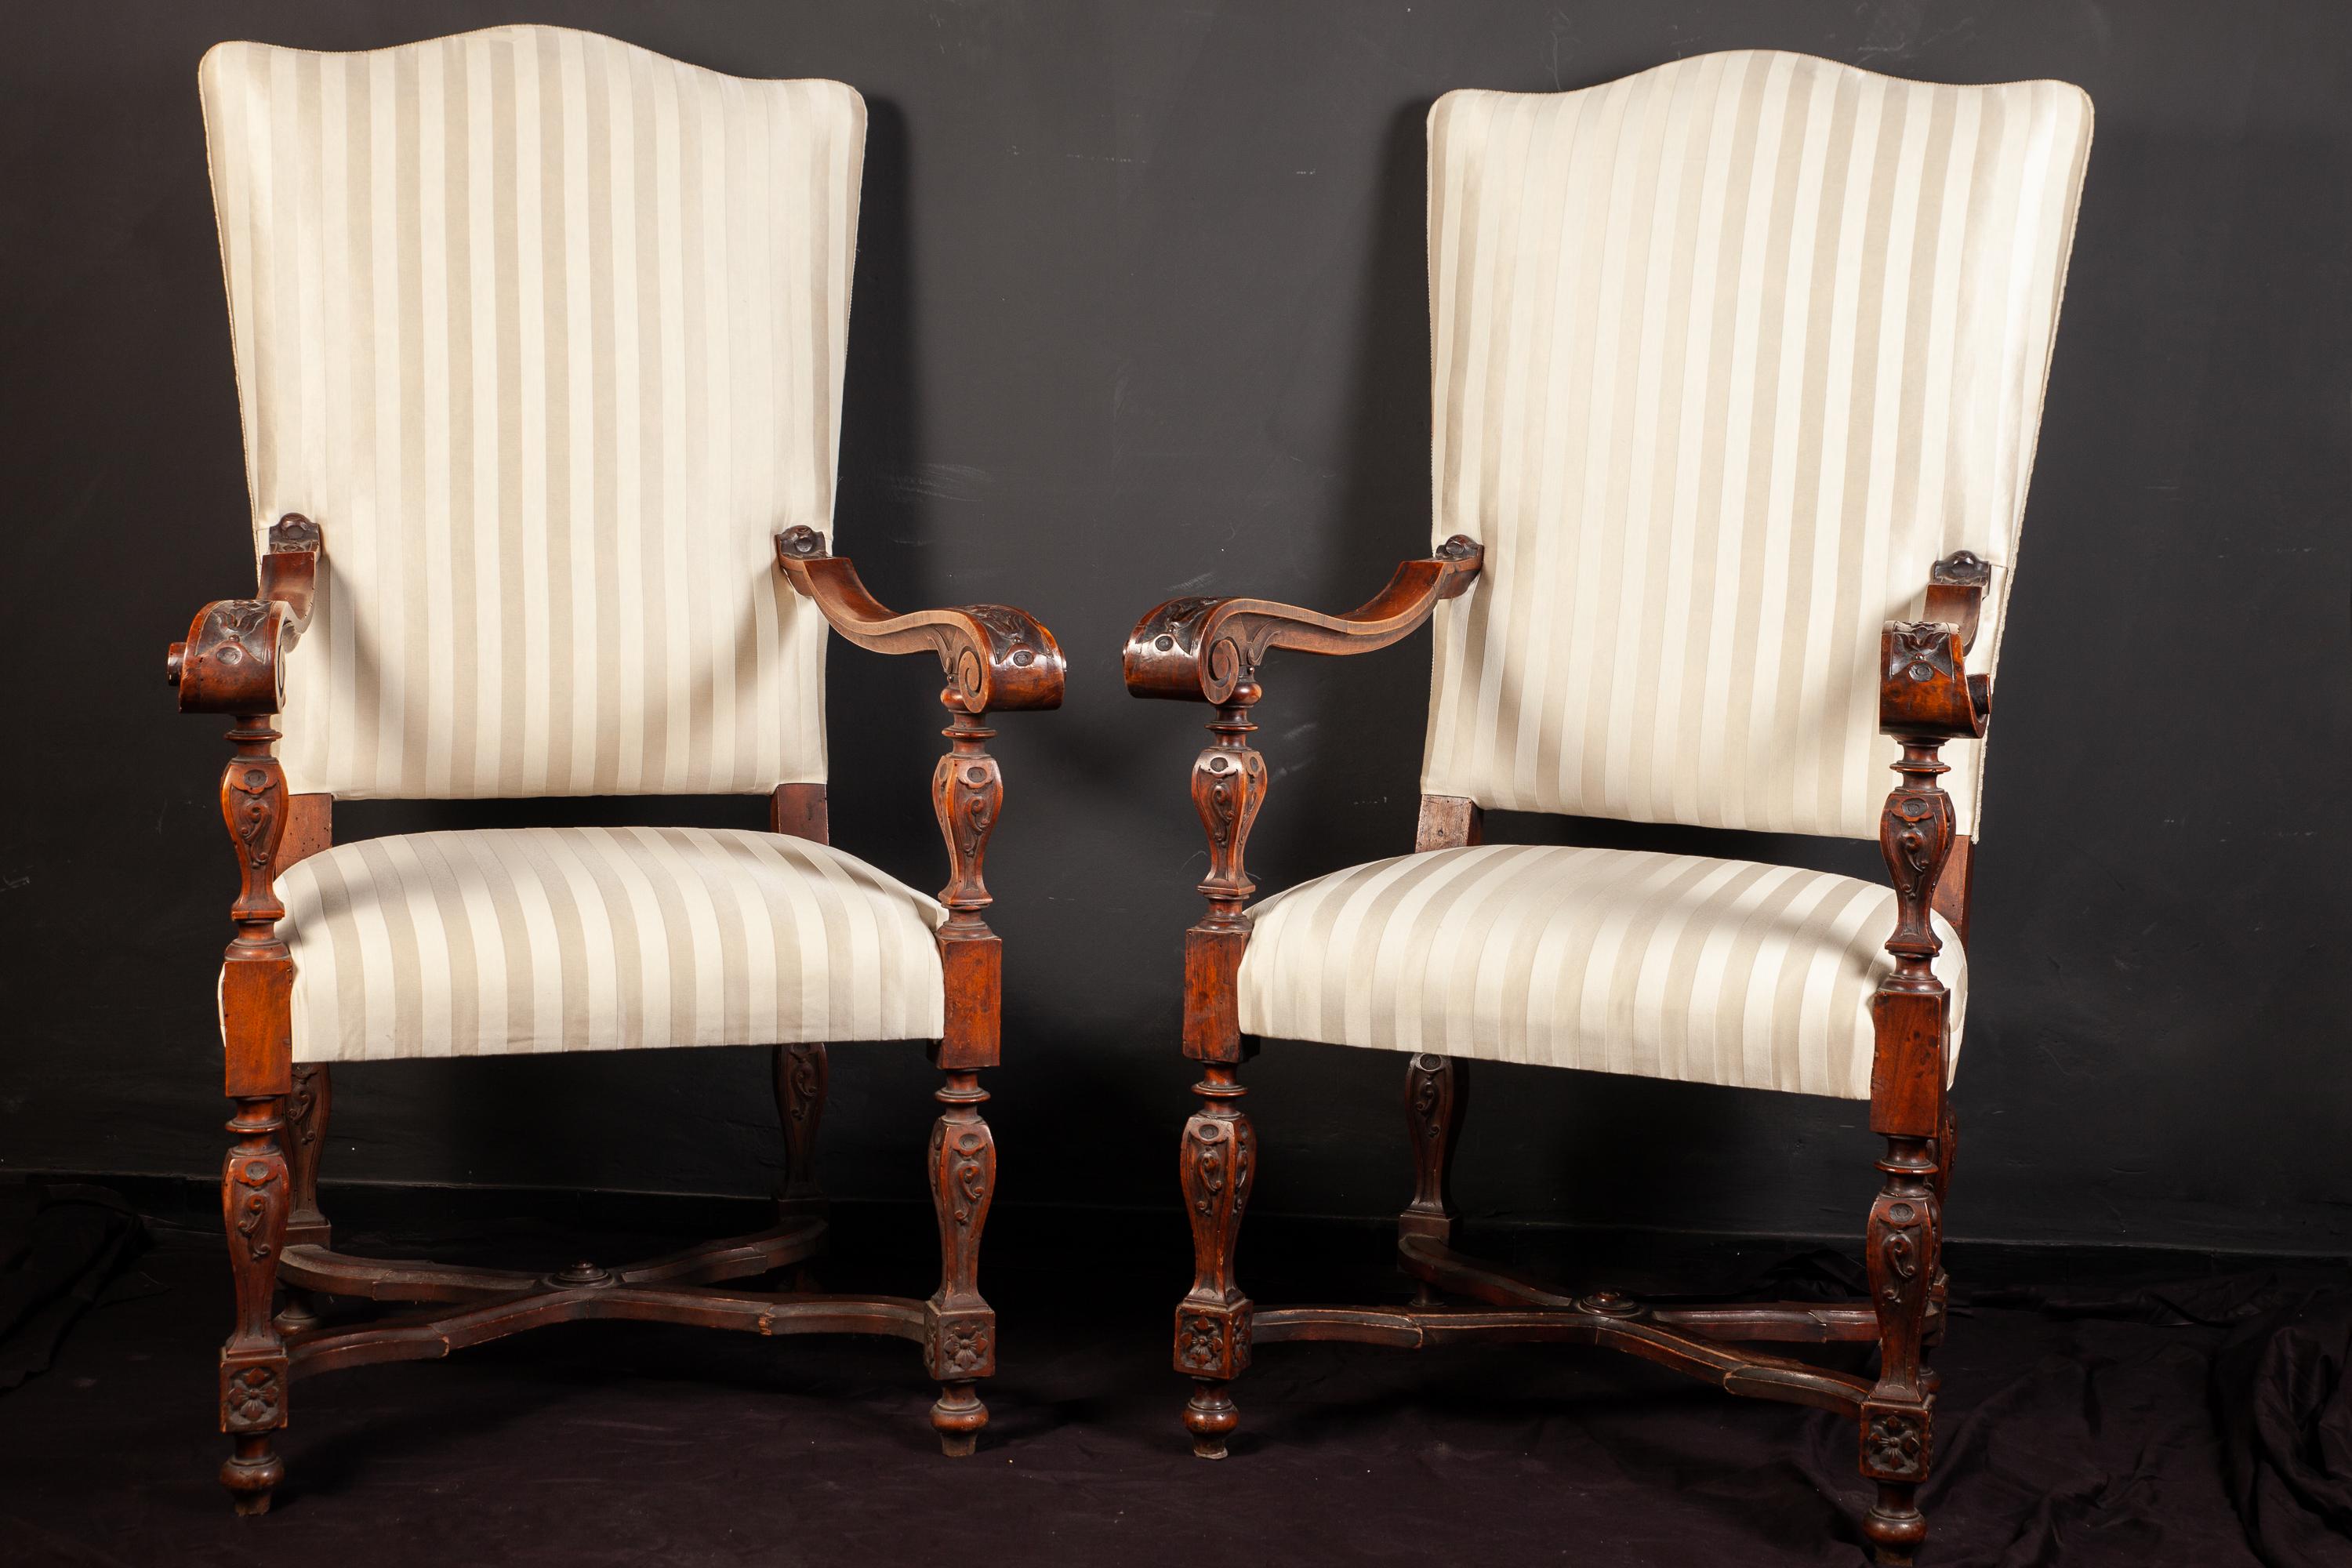 Zwei elegante italienische Sessel aus Nussbaumholz des 19. Jahrhunderts mit feiner Schnitzerei und weiß gestreifter Polsterung.
Maße: 130 x 60 x 50.